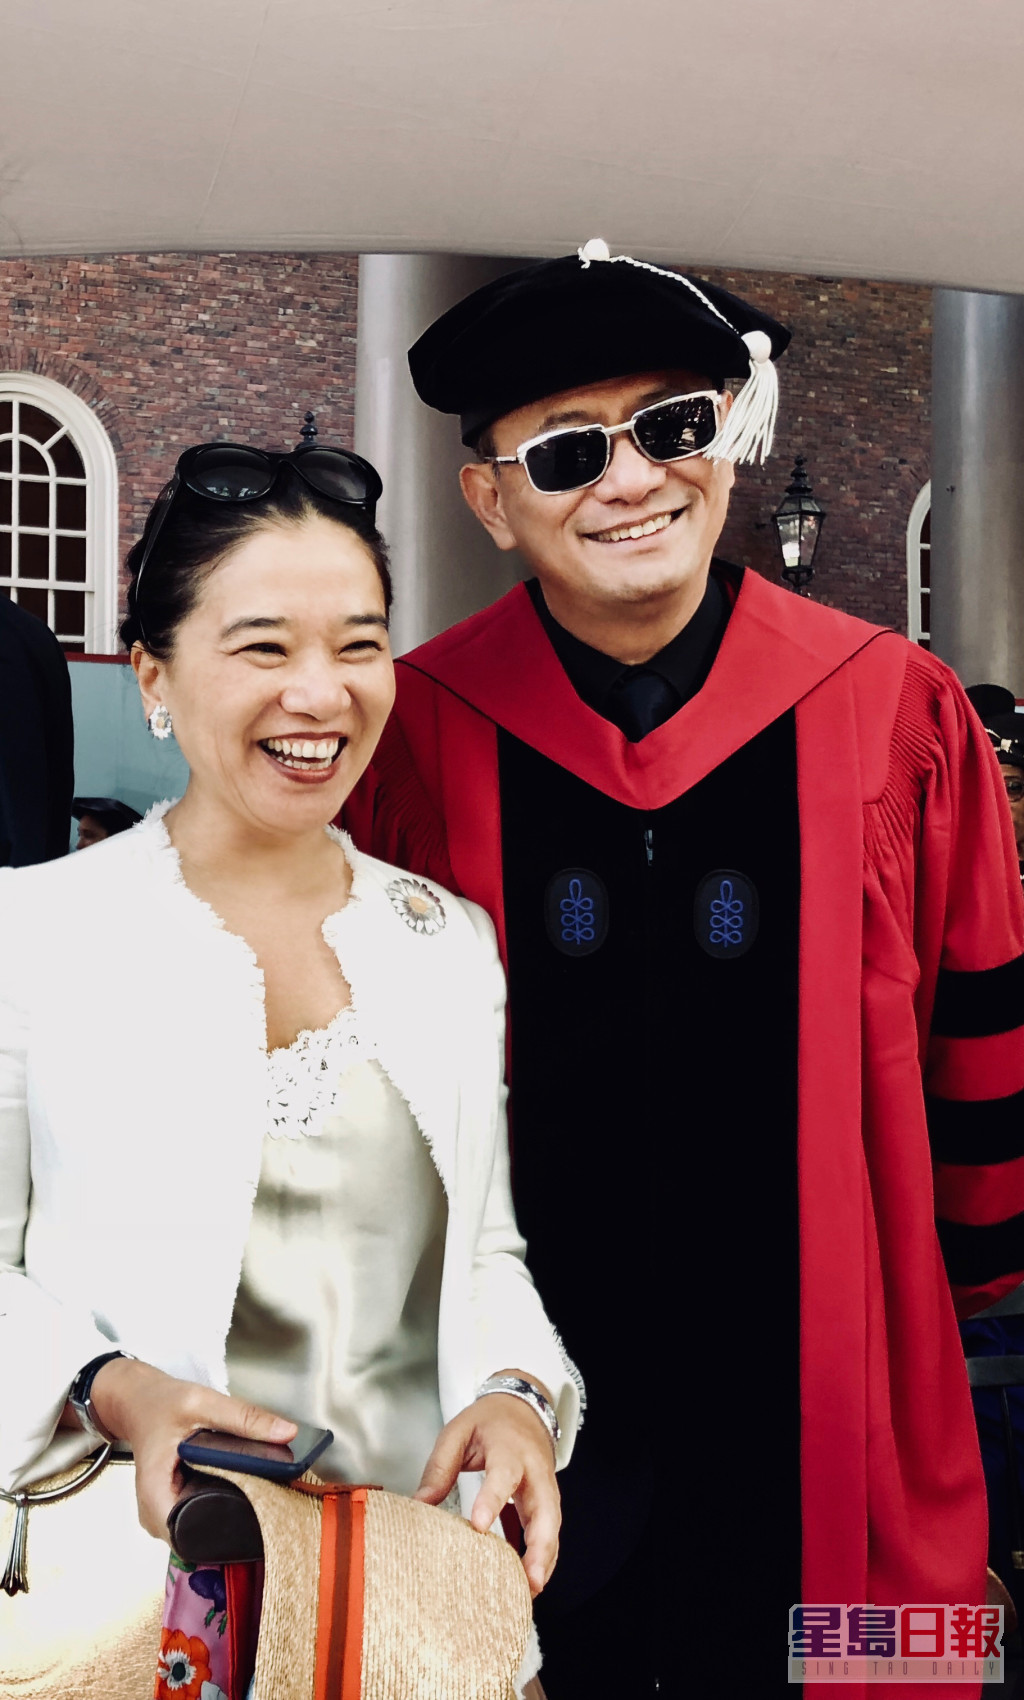 王家衛2018年獲美國哈佛大學授予文學榮譽博士學位，成為史上第一位獲此殊榮的亞洲導演。